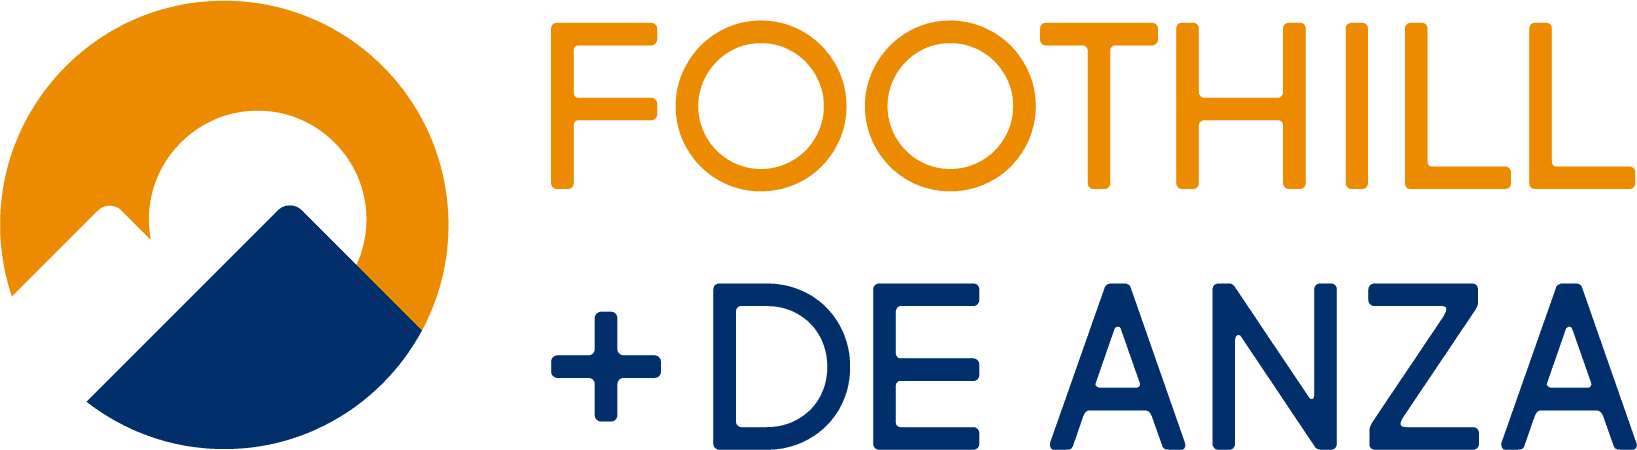 Foothill + De Anza Logo